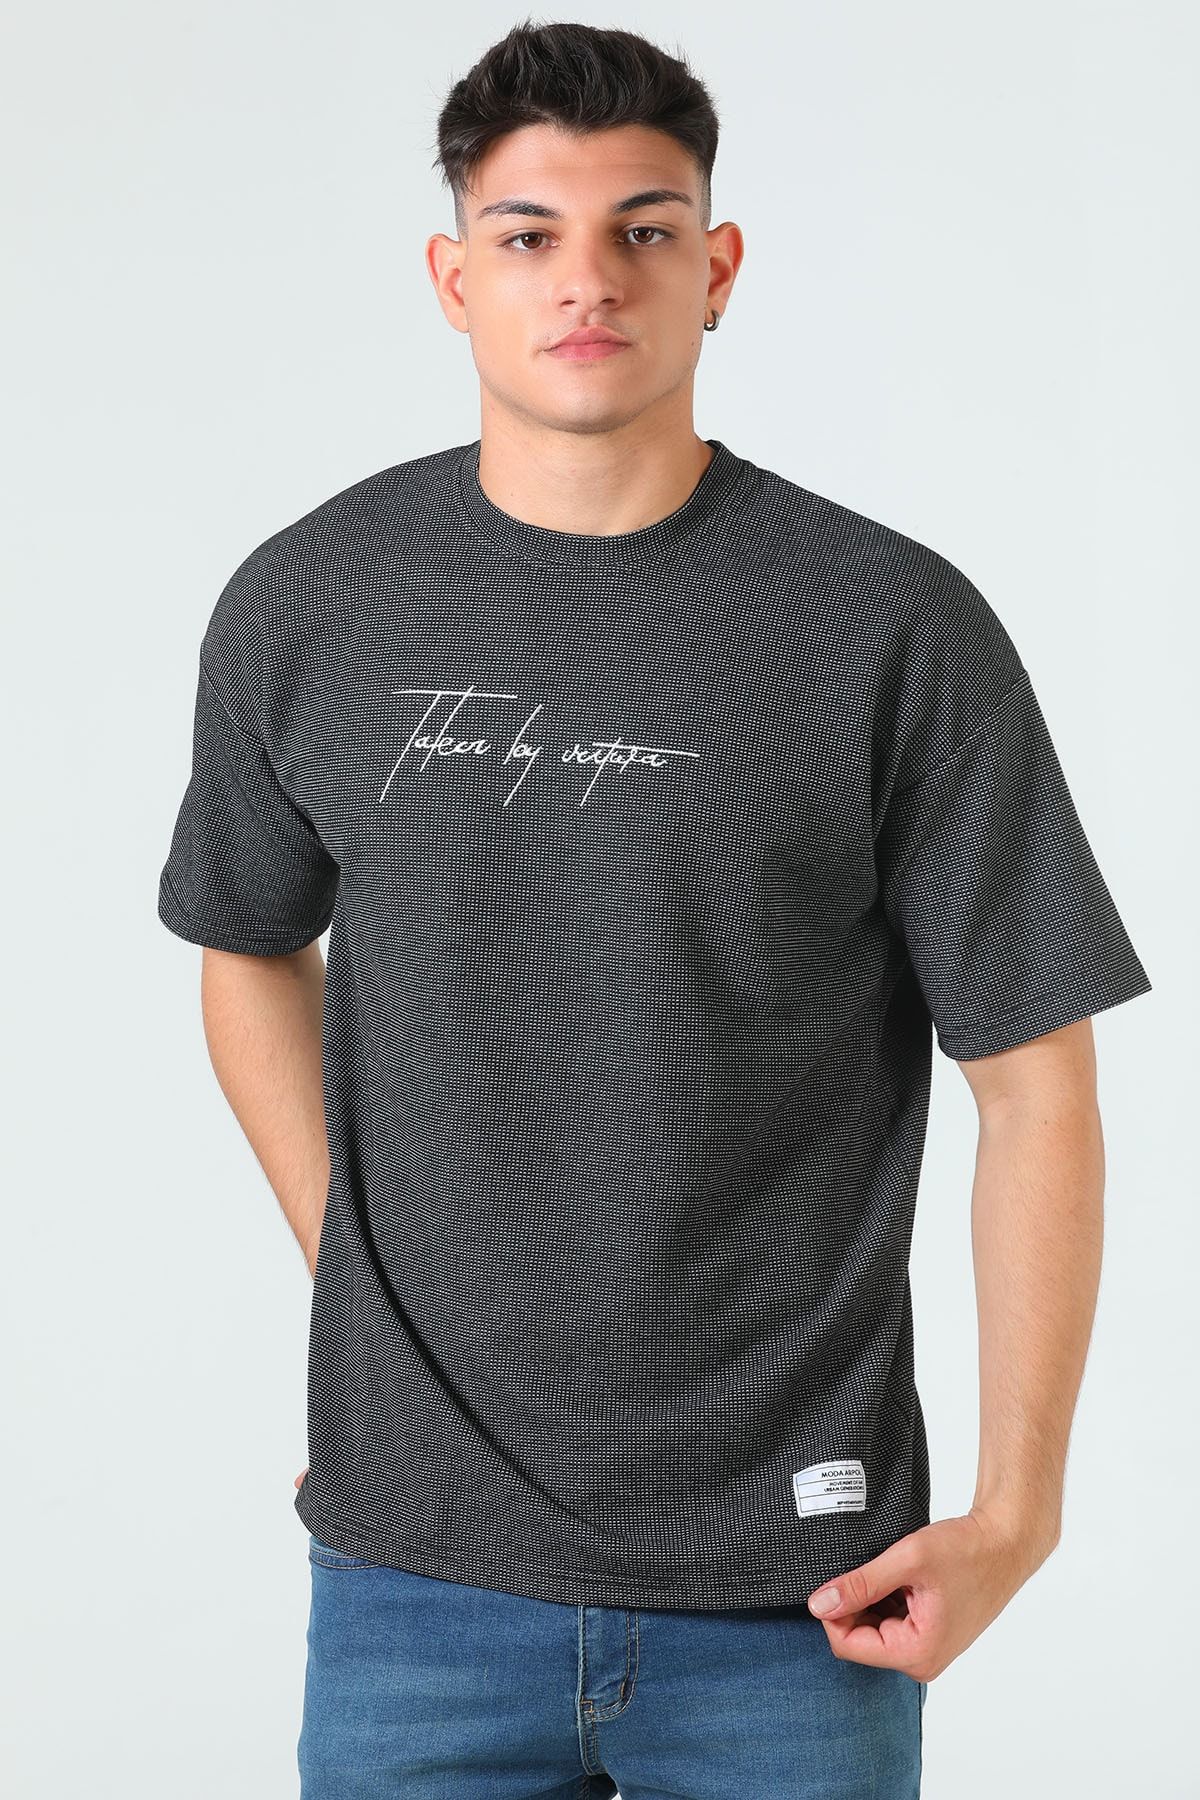 Julude Siyah Erkek Bisiklet Yaka Kendinden Desenli Baskılı T-shirt